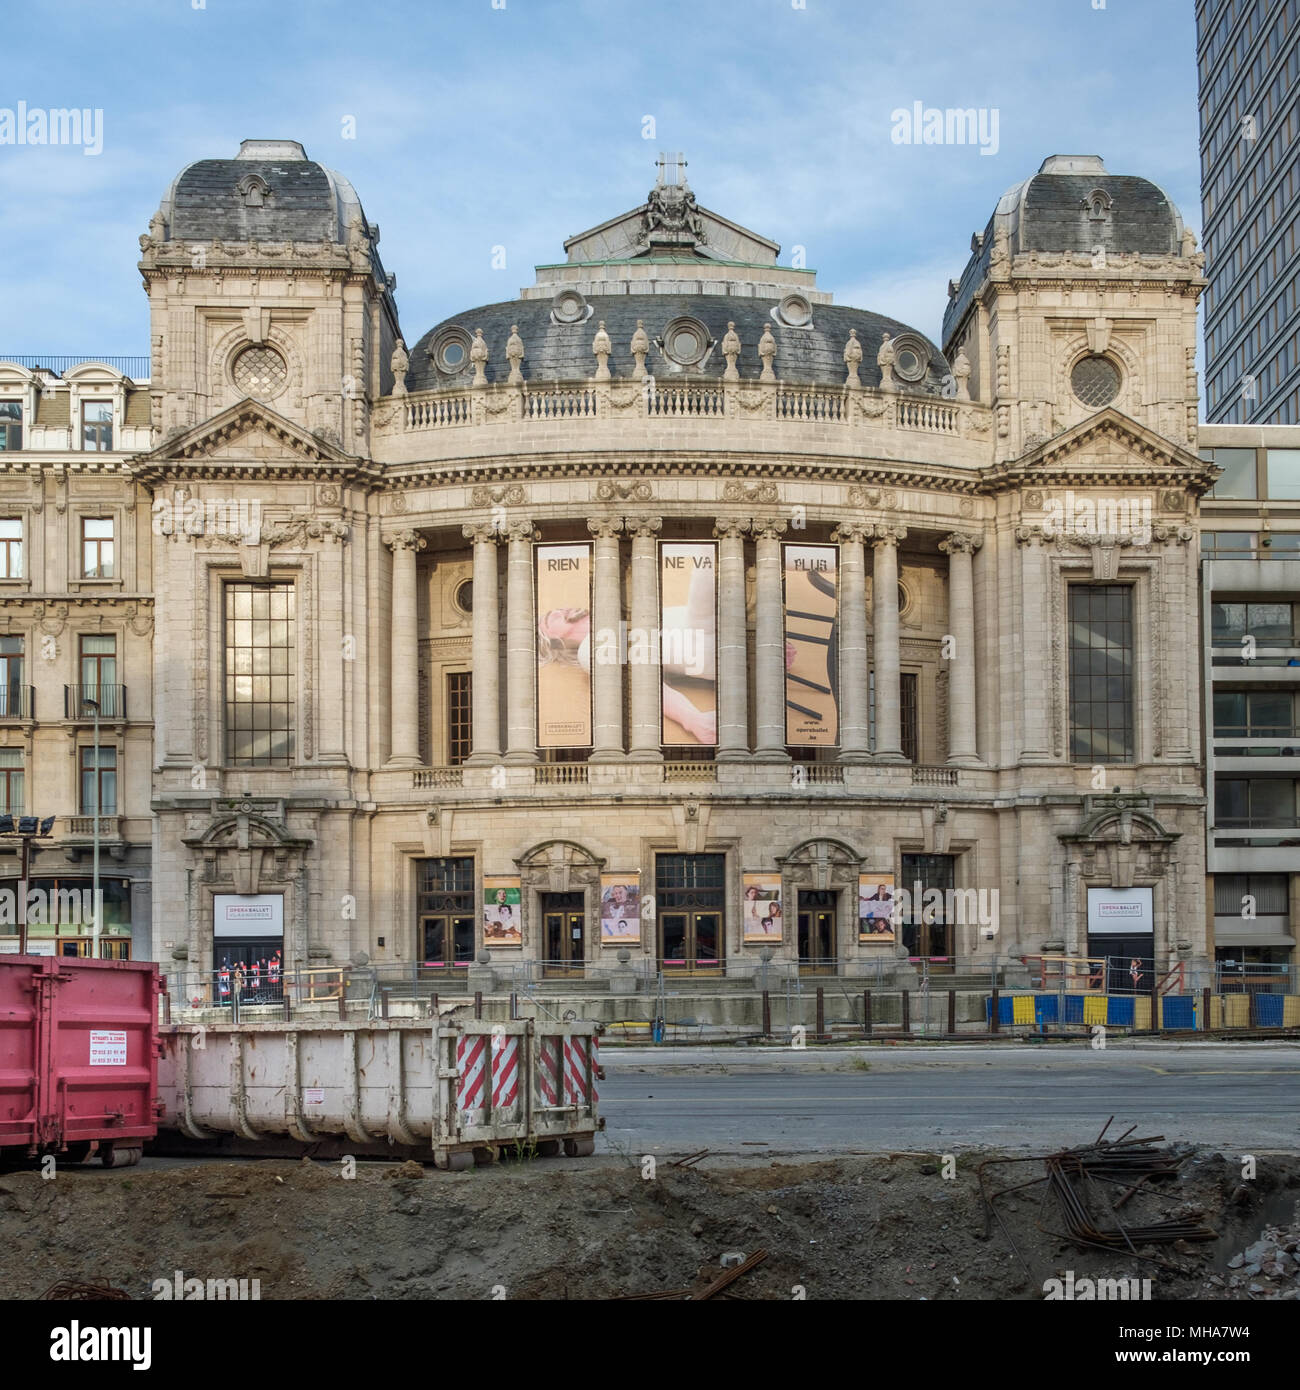 Lavori stradali nella parte anteriore del palazzo dell'Opera ad Anversa, in Belgio Foto Stock